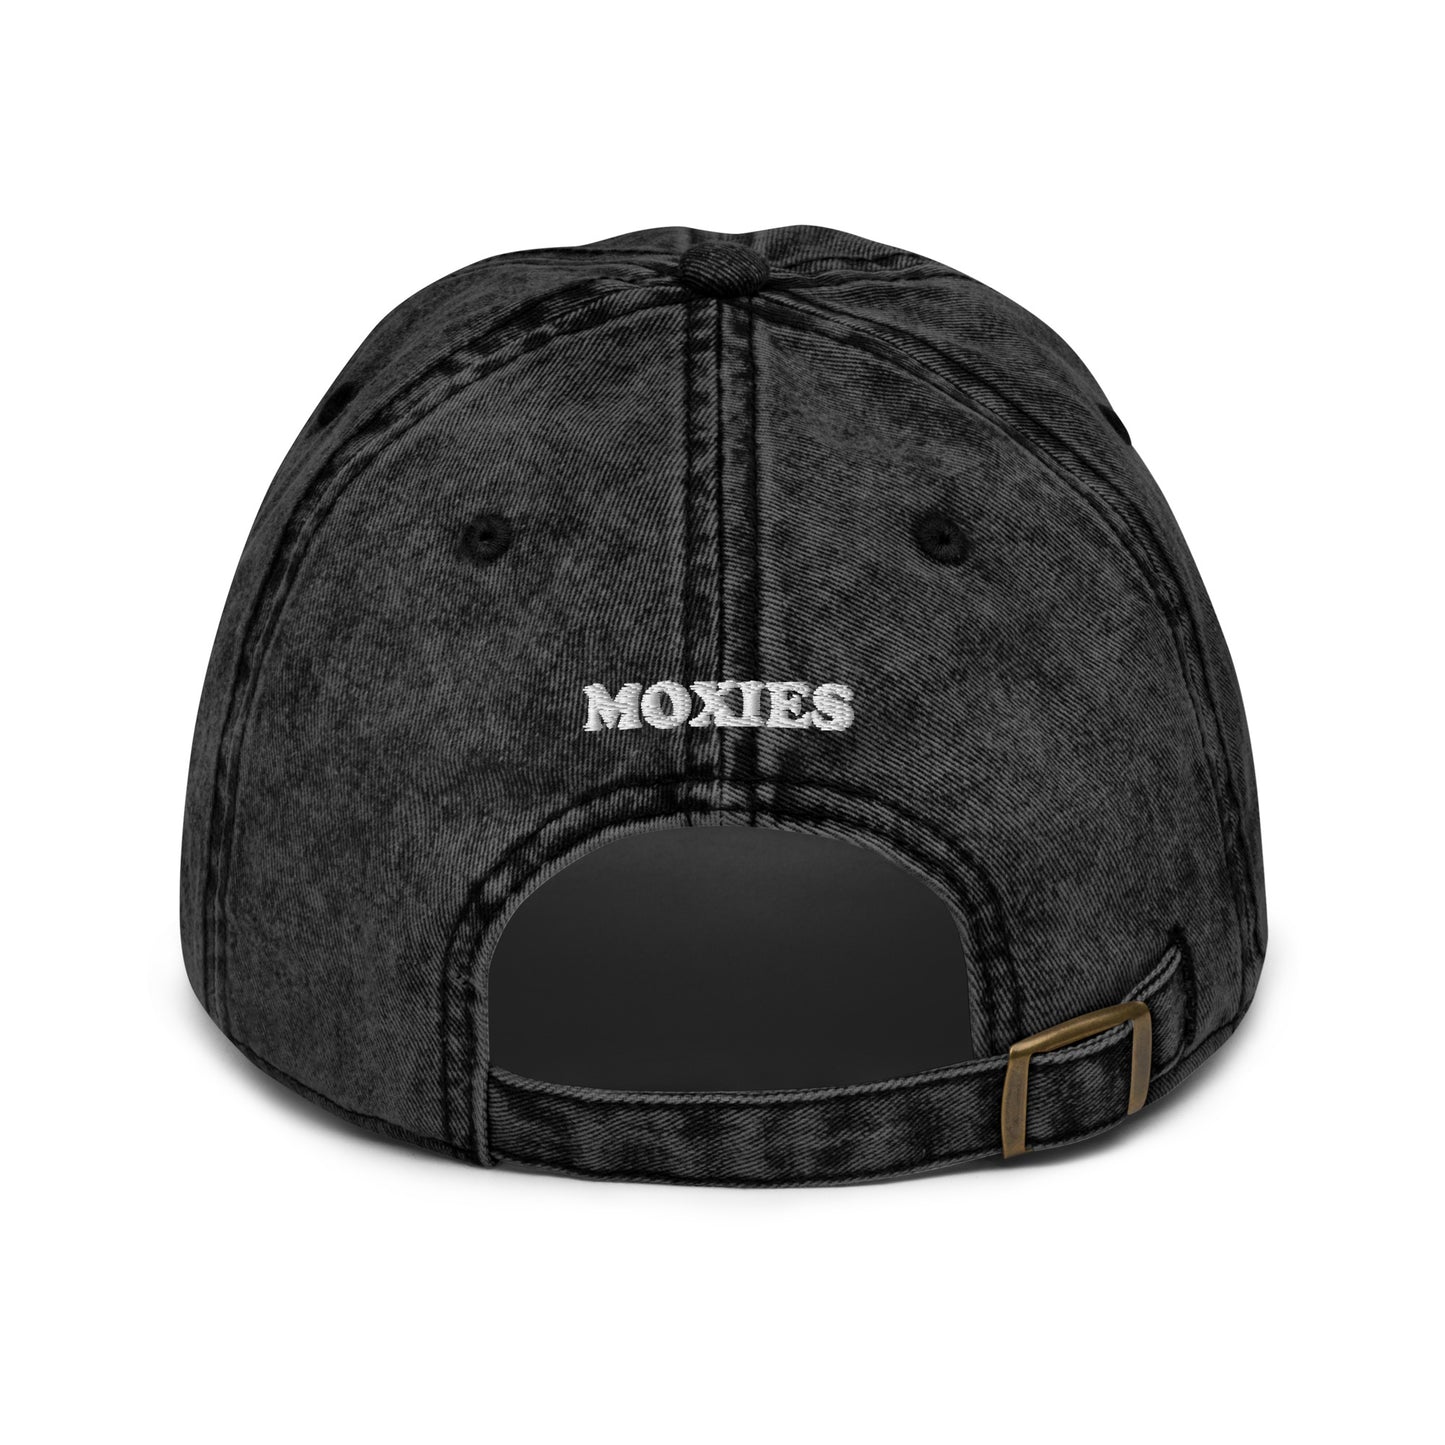 Moxies Vintage Baseball Cap